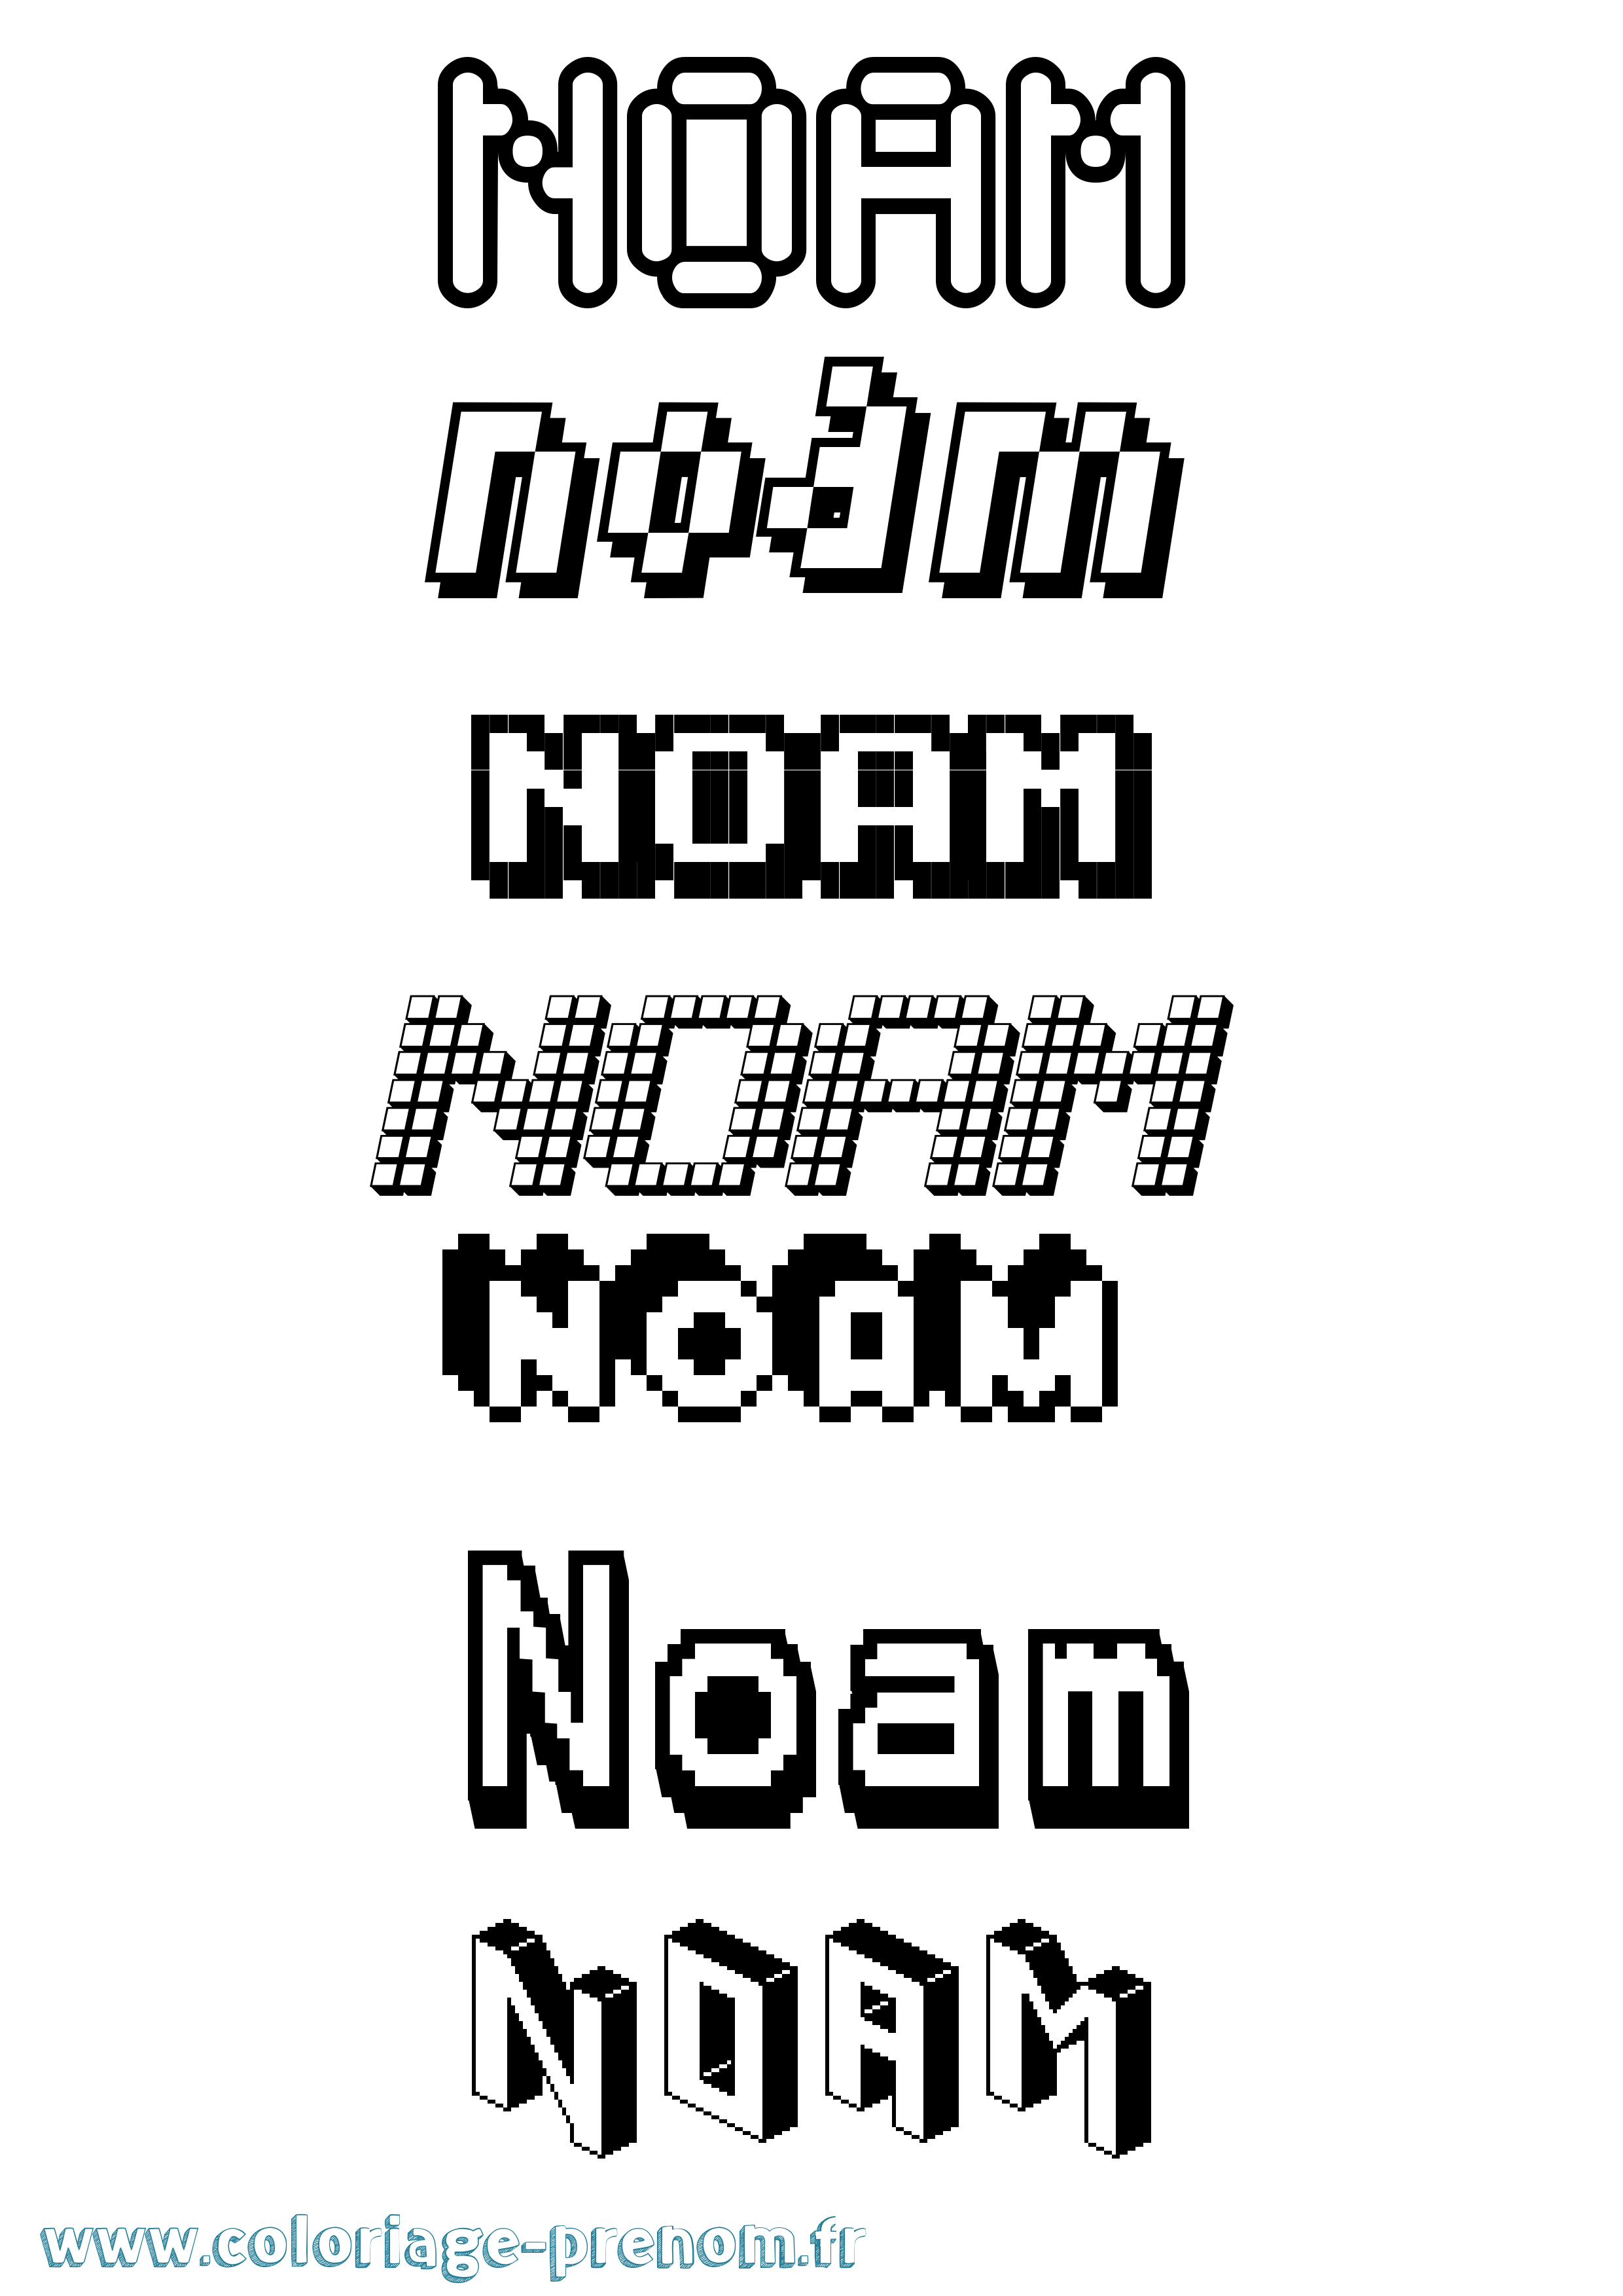 Coloriage prénom Noam